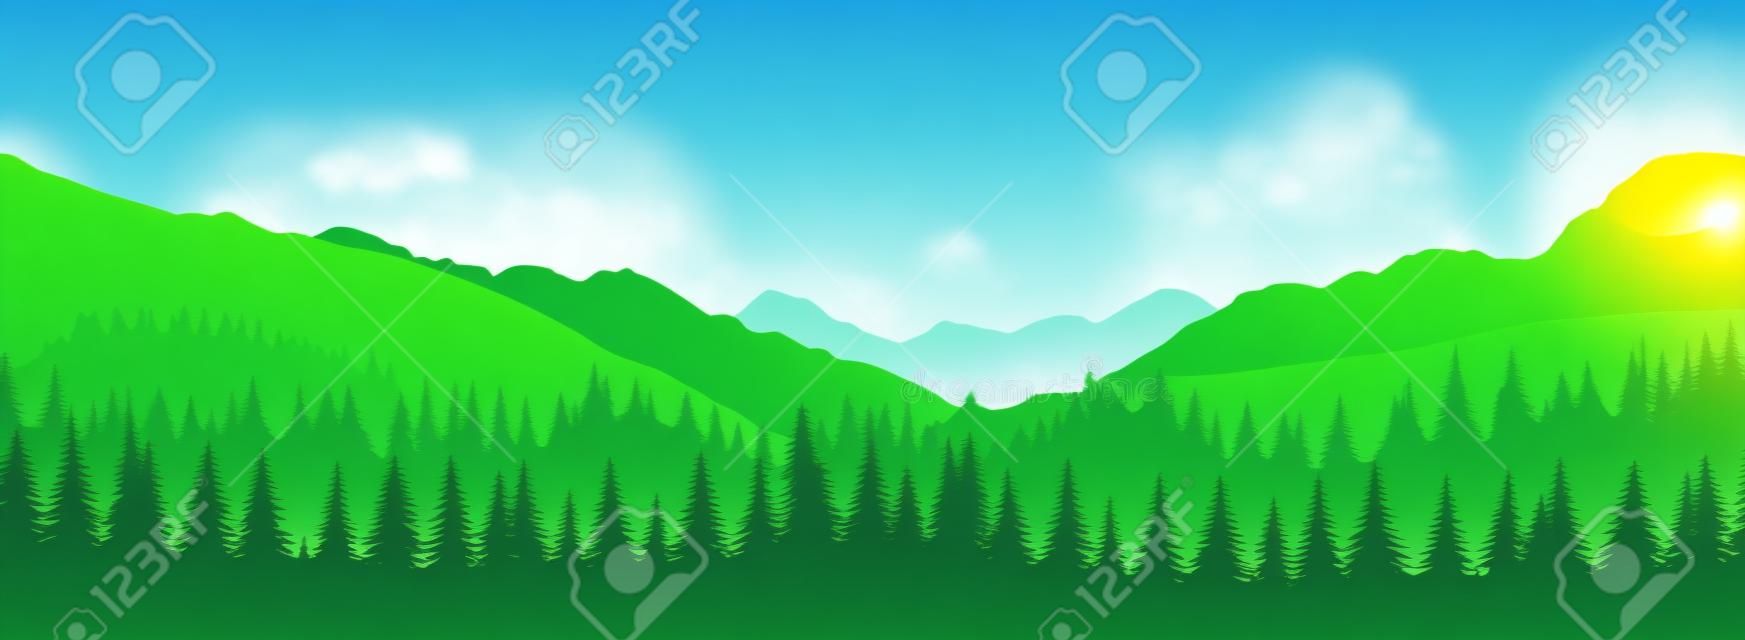 Paysage panoramique de vecteur avec des silhouettes vertes d'arbres et de collines